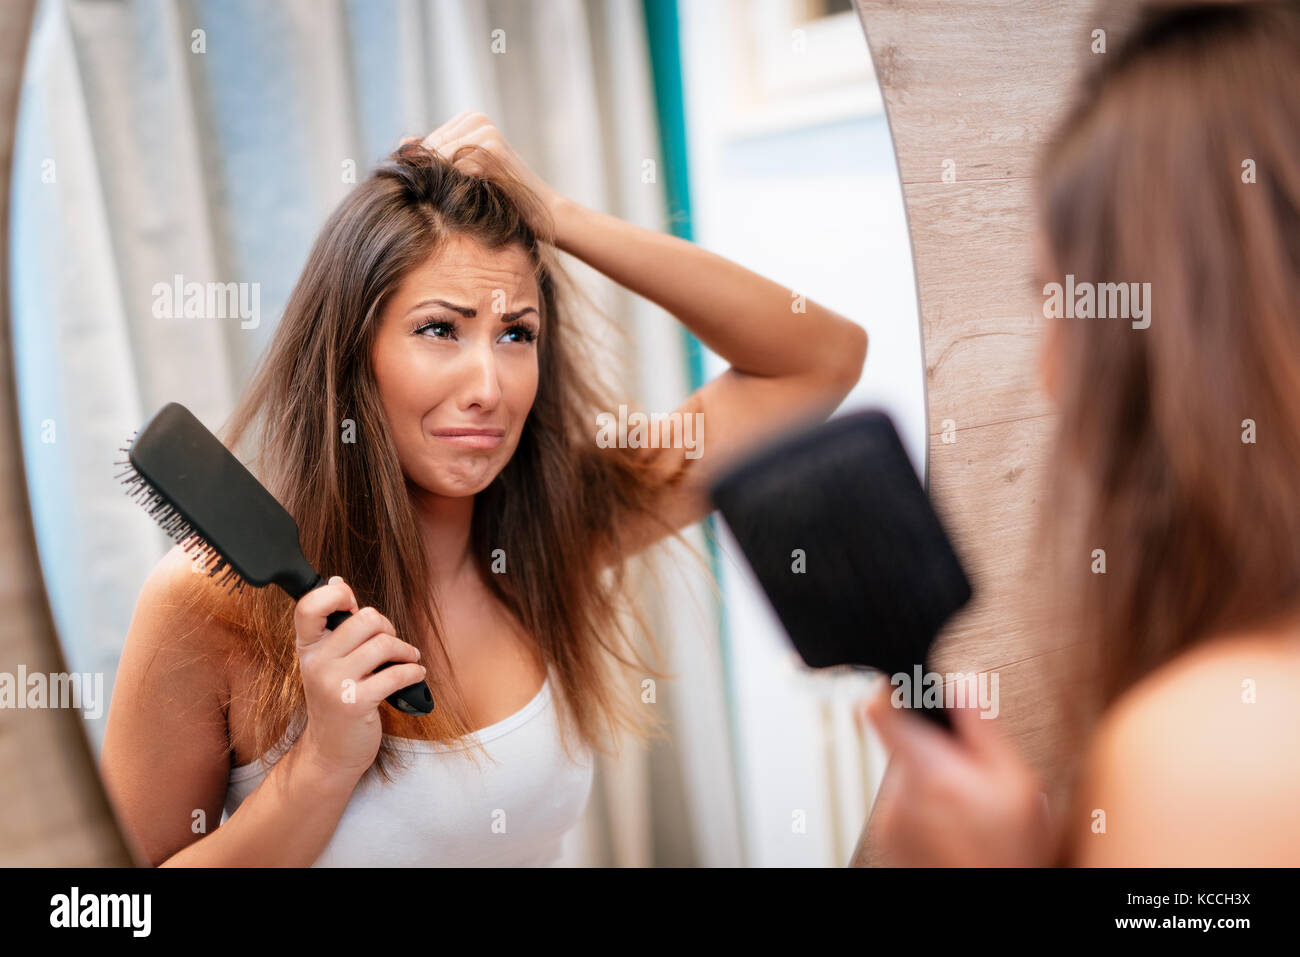 Portrait d'une jeune femme a souligné service avec les cheveux ébouriffés et déplut à sur son miroir de salle de bains. focus sélectif. Banque D'Images